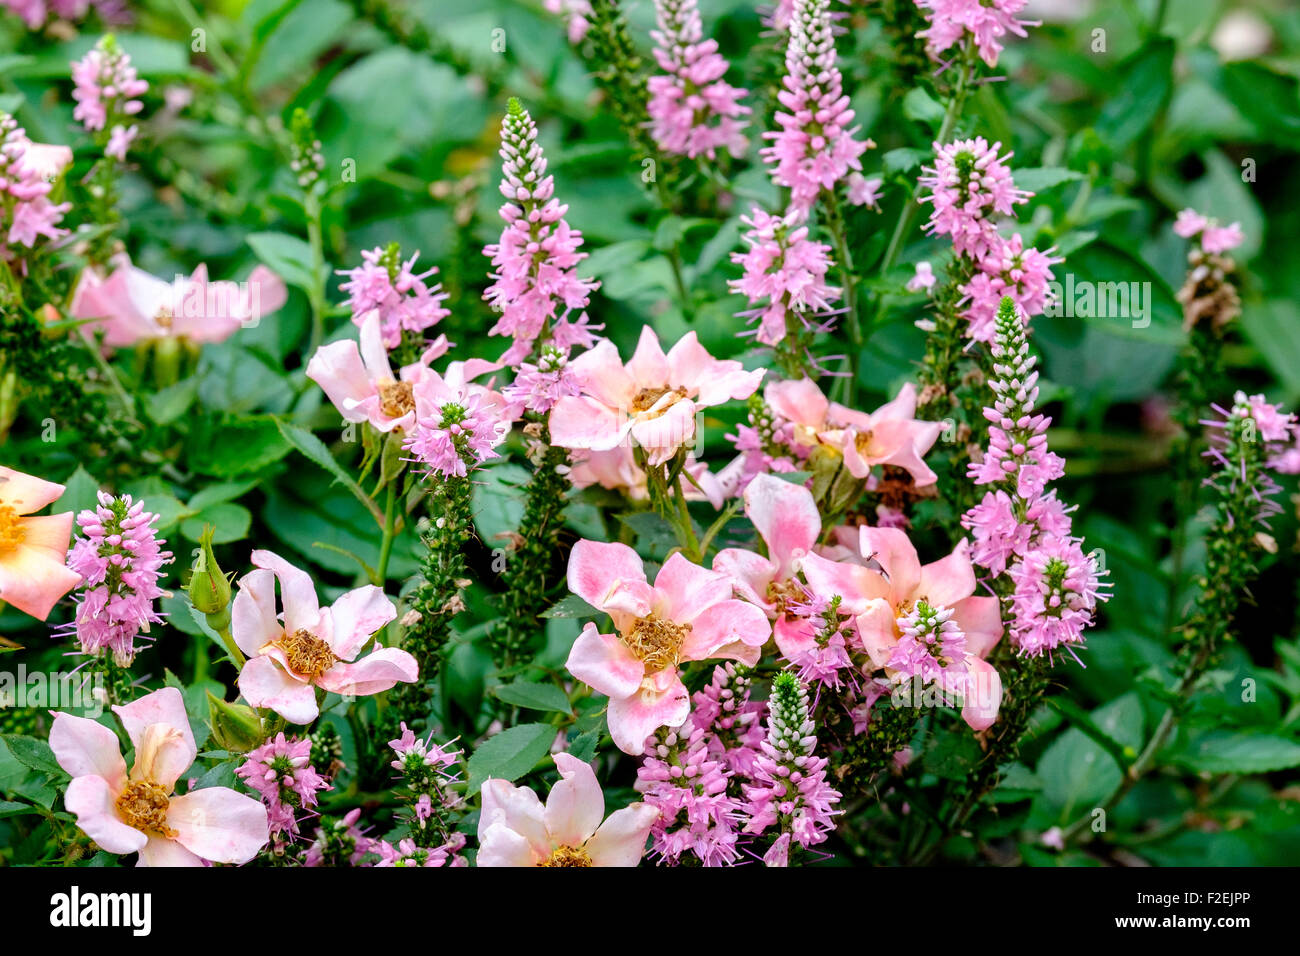 Bodendecker Rosen, Rosa Happy Chappy, Rosa Interhappy PP19646. Eine niedrig  wachsende, stieg das sieht aus wie eine wilde Rose und Arcado rosa  Wildform. Oklahoma, USA Stockfotografie - Alamy